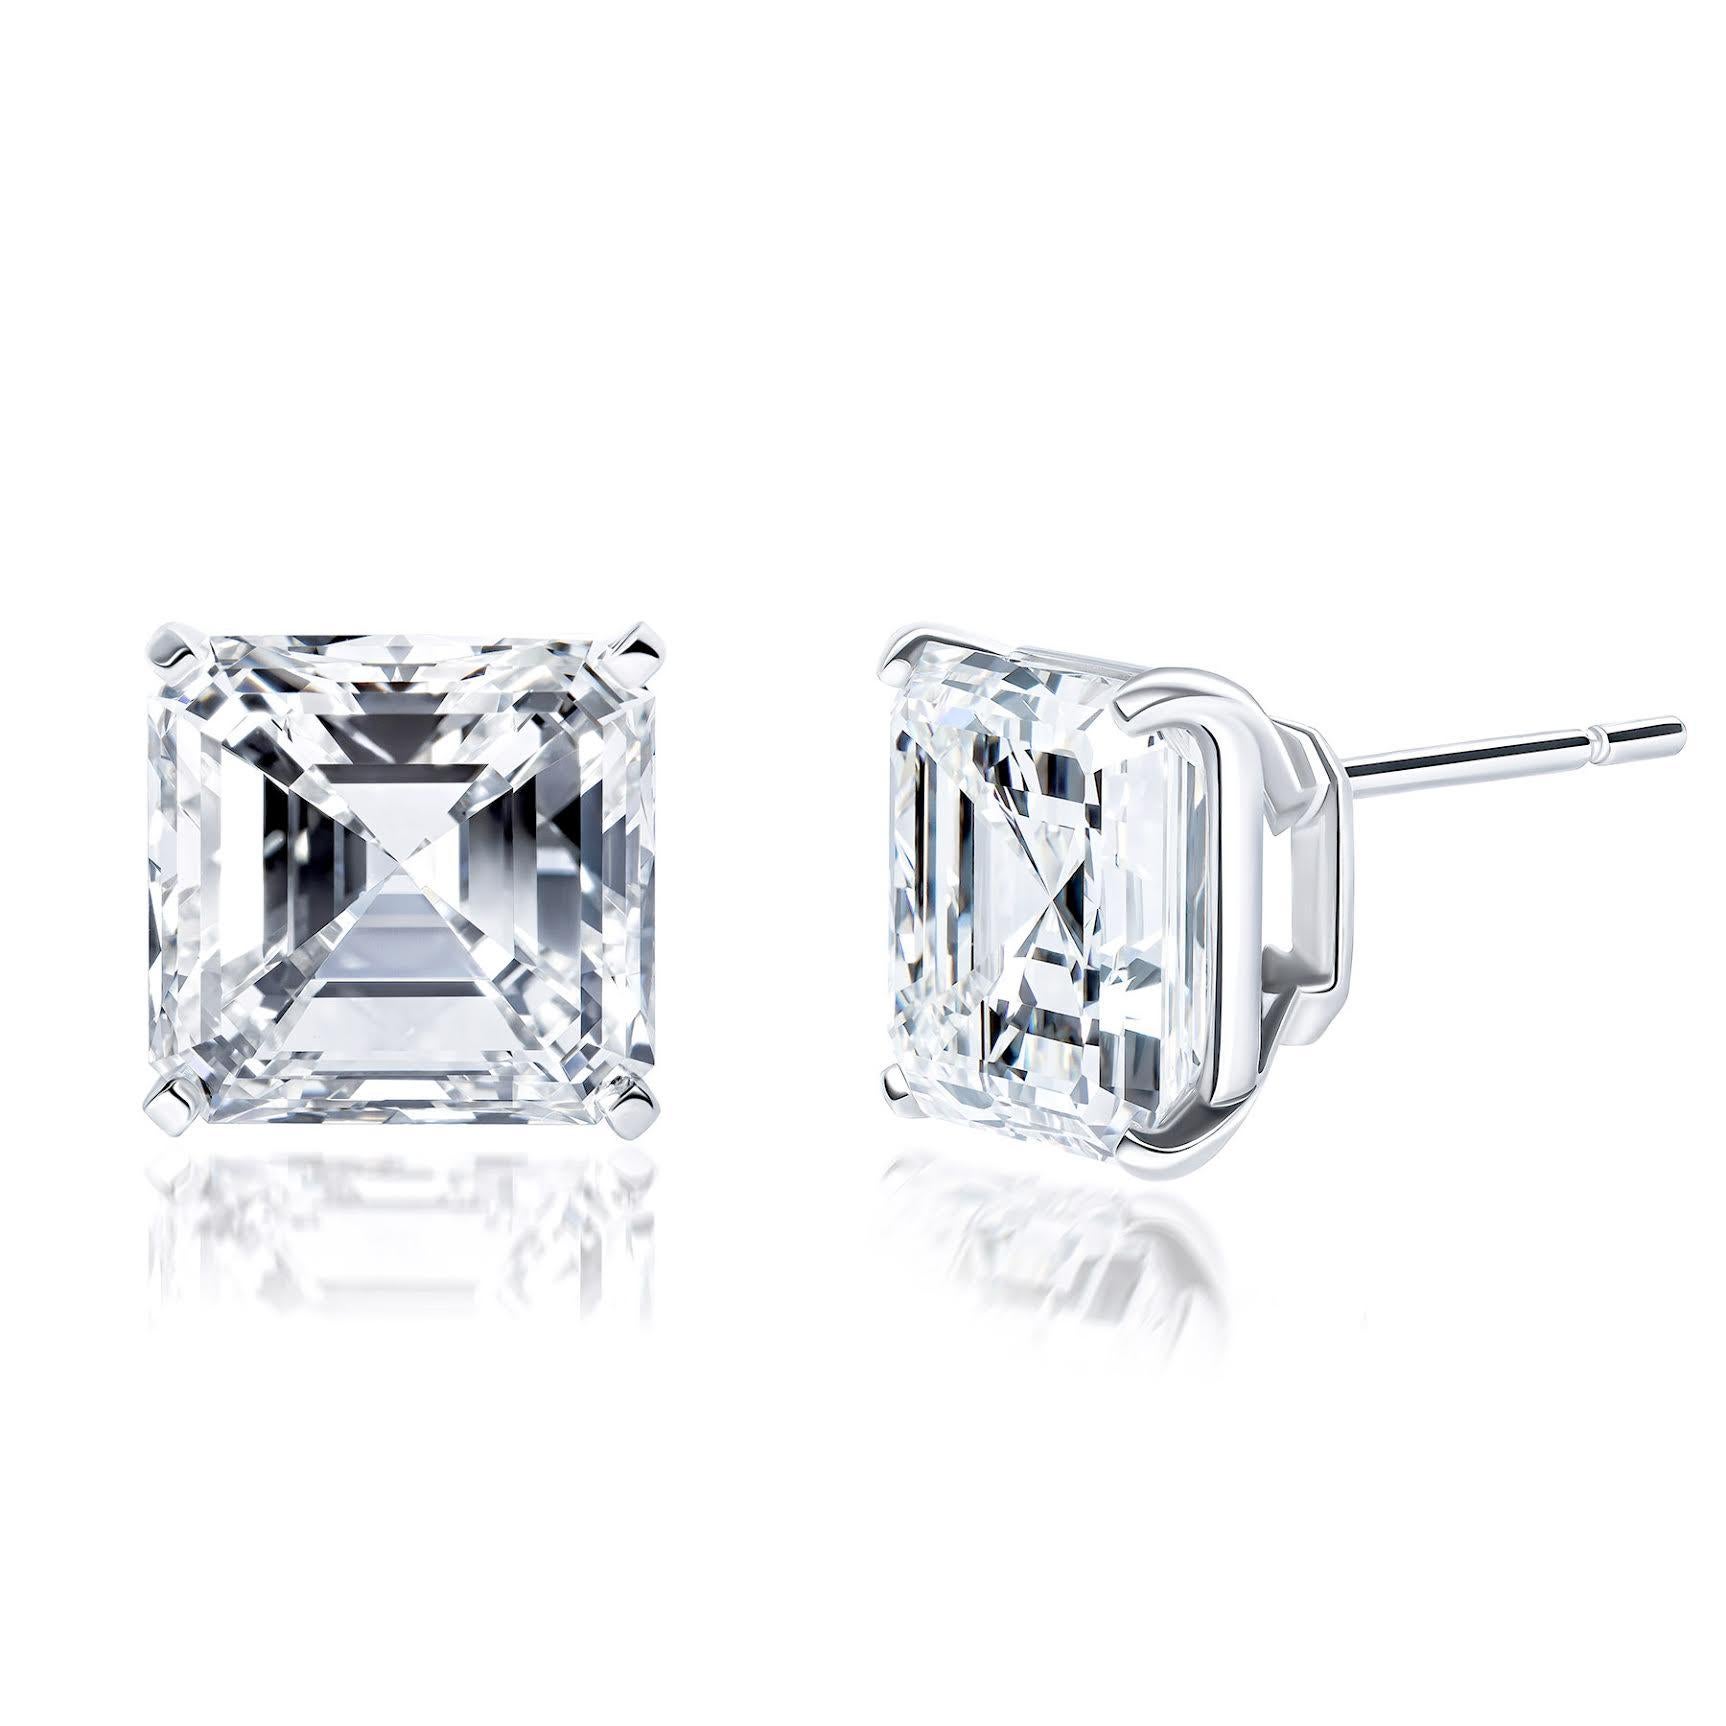 Women's Issac Nussbaum GIA Certified 11.53 Carat Asscher Cut Diamond Stud Earrings